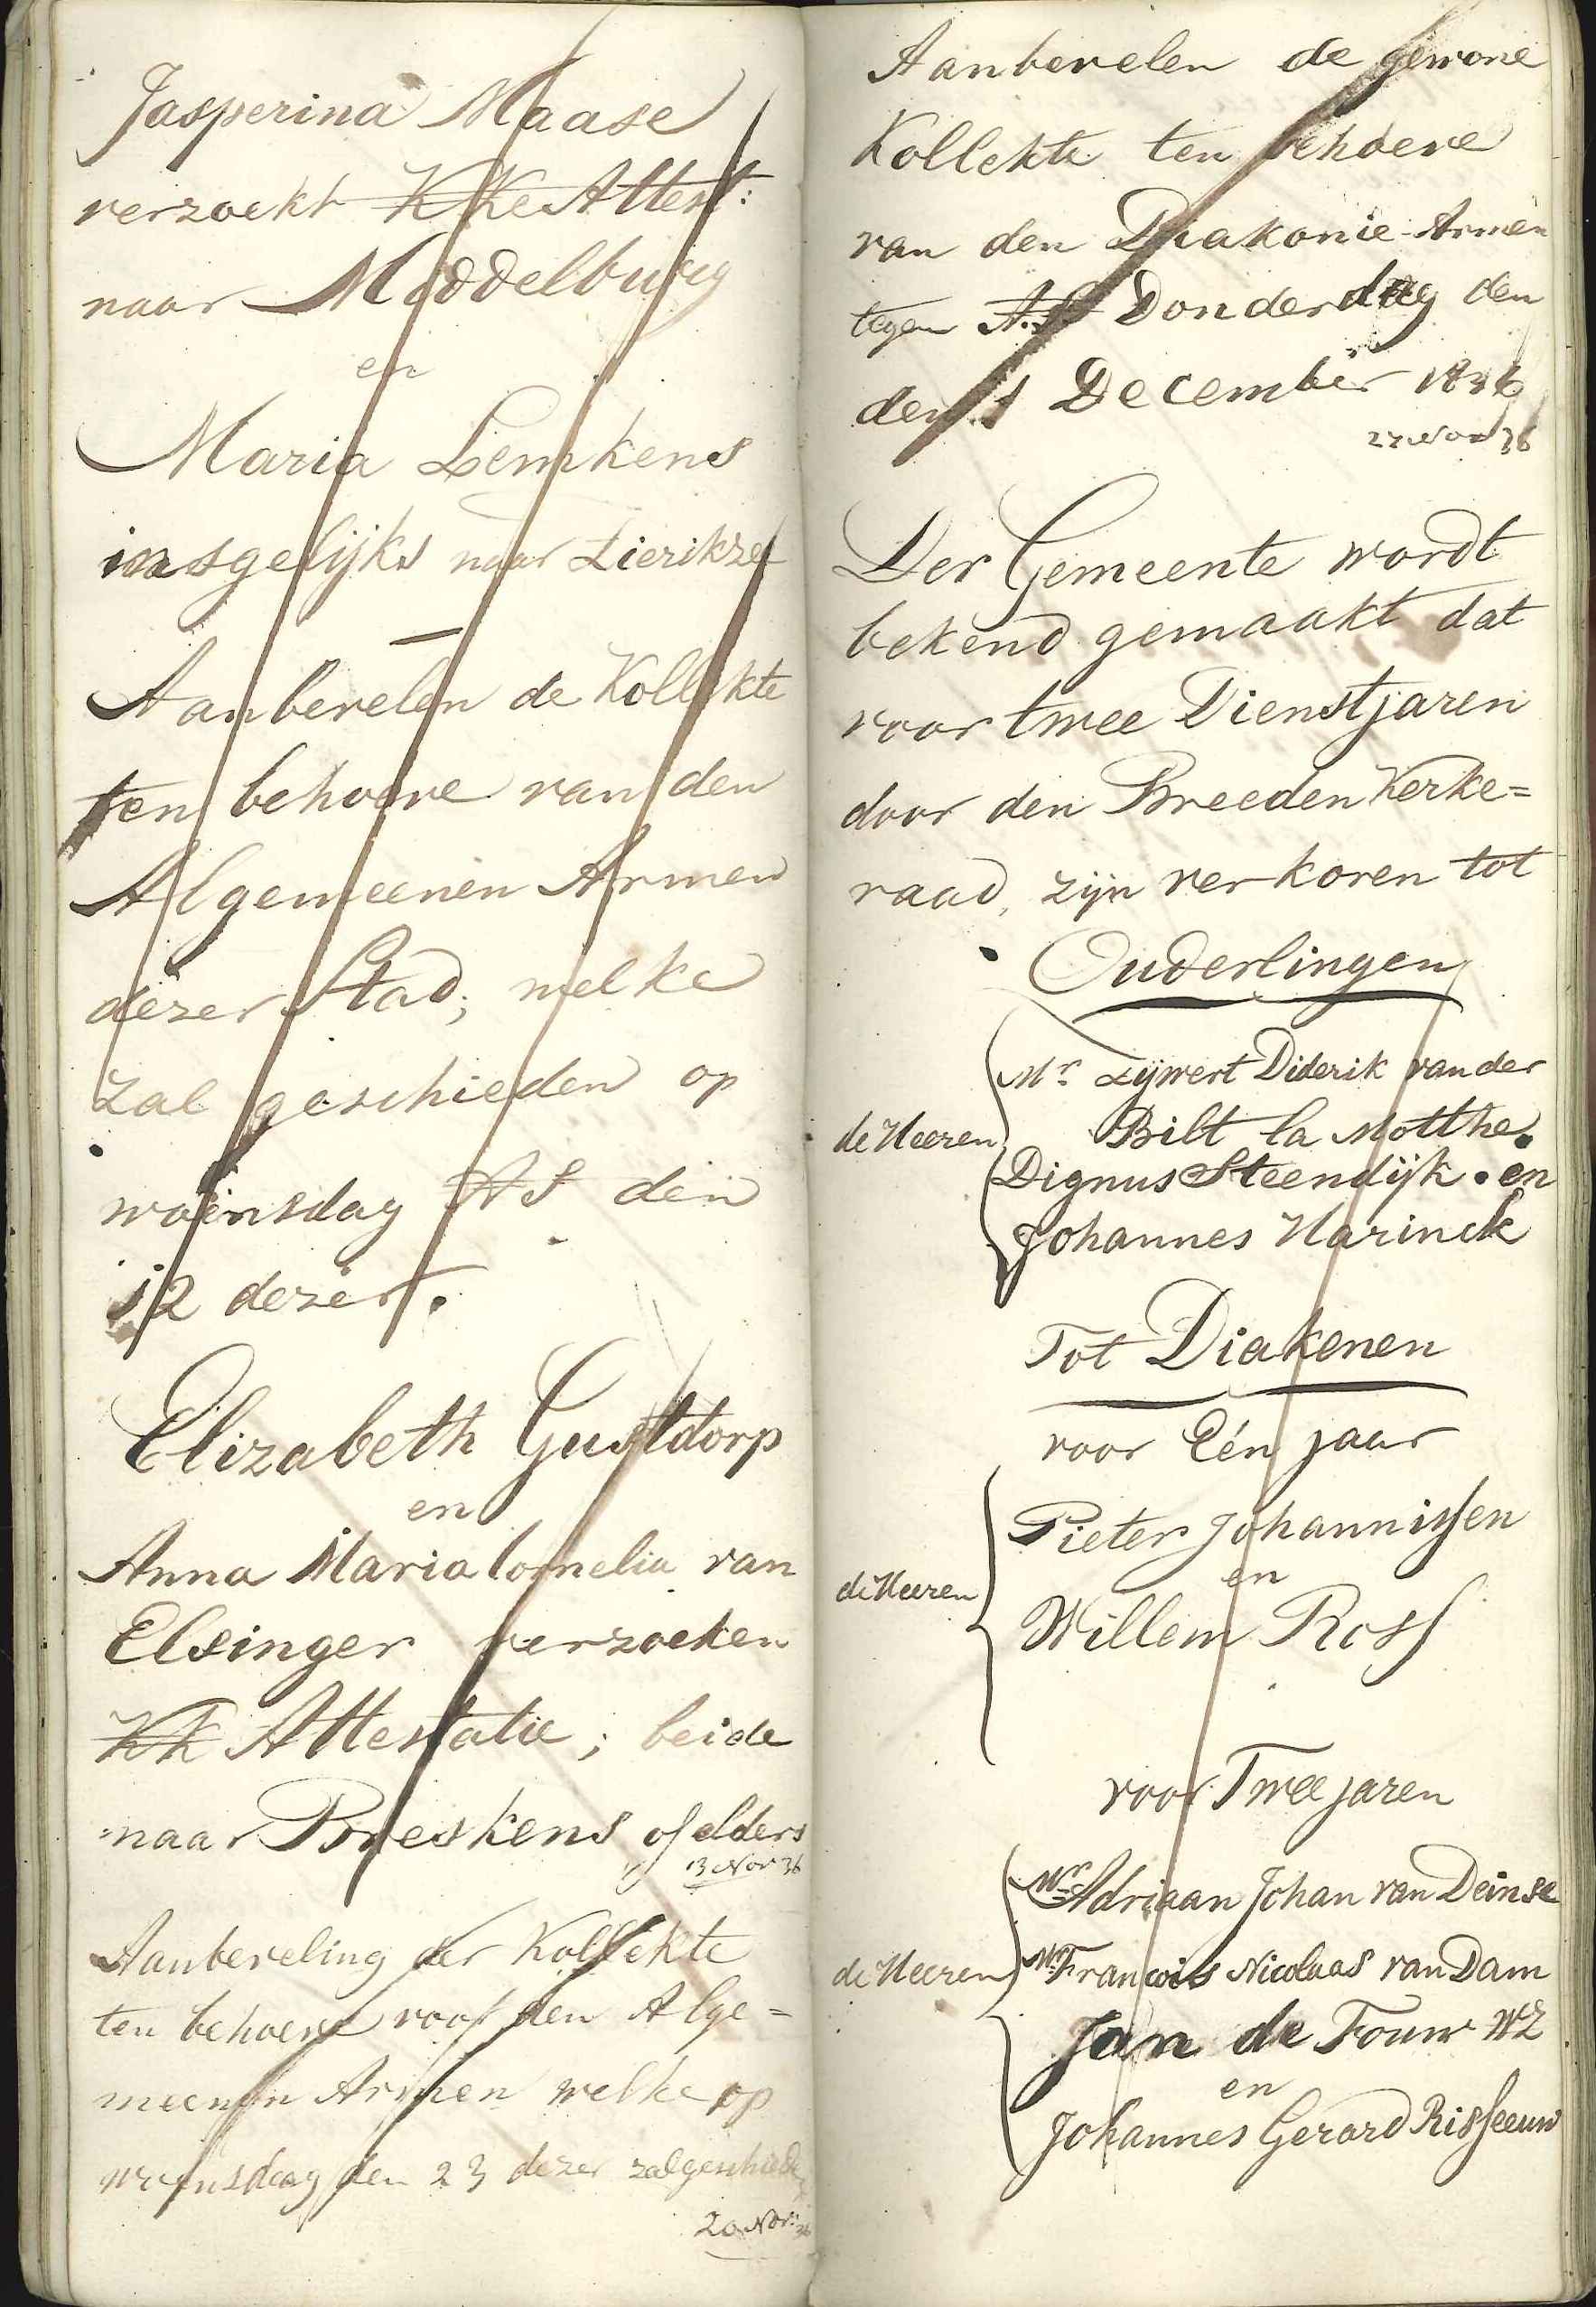 Register van kanselafkondigingen,1836. GAG.Arch.herv.kerk, inv.nr. 43.